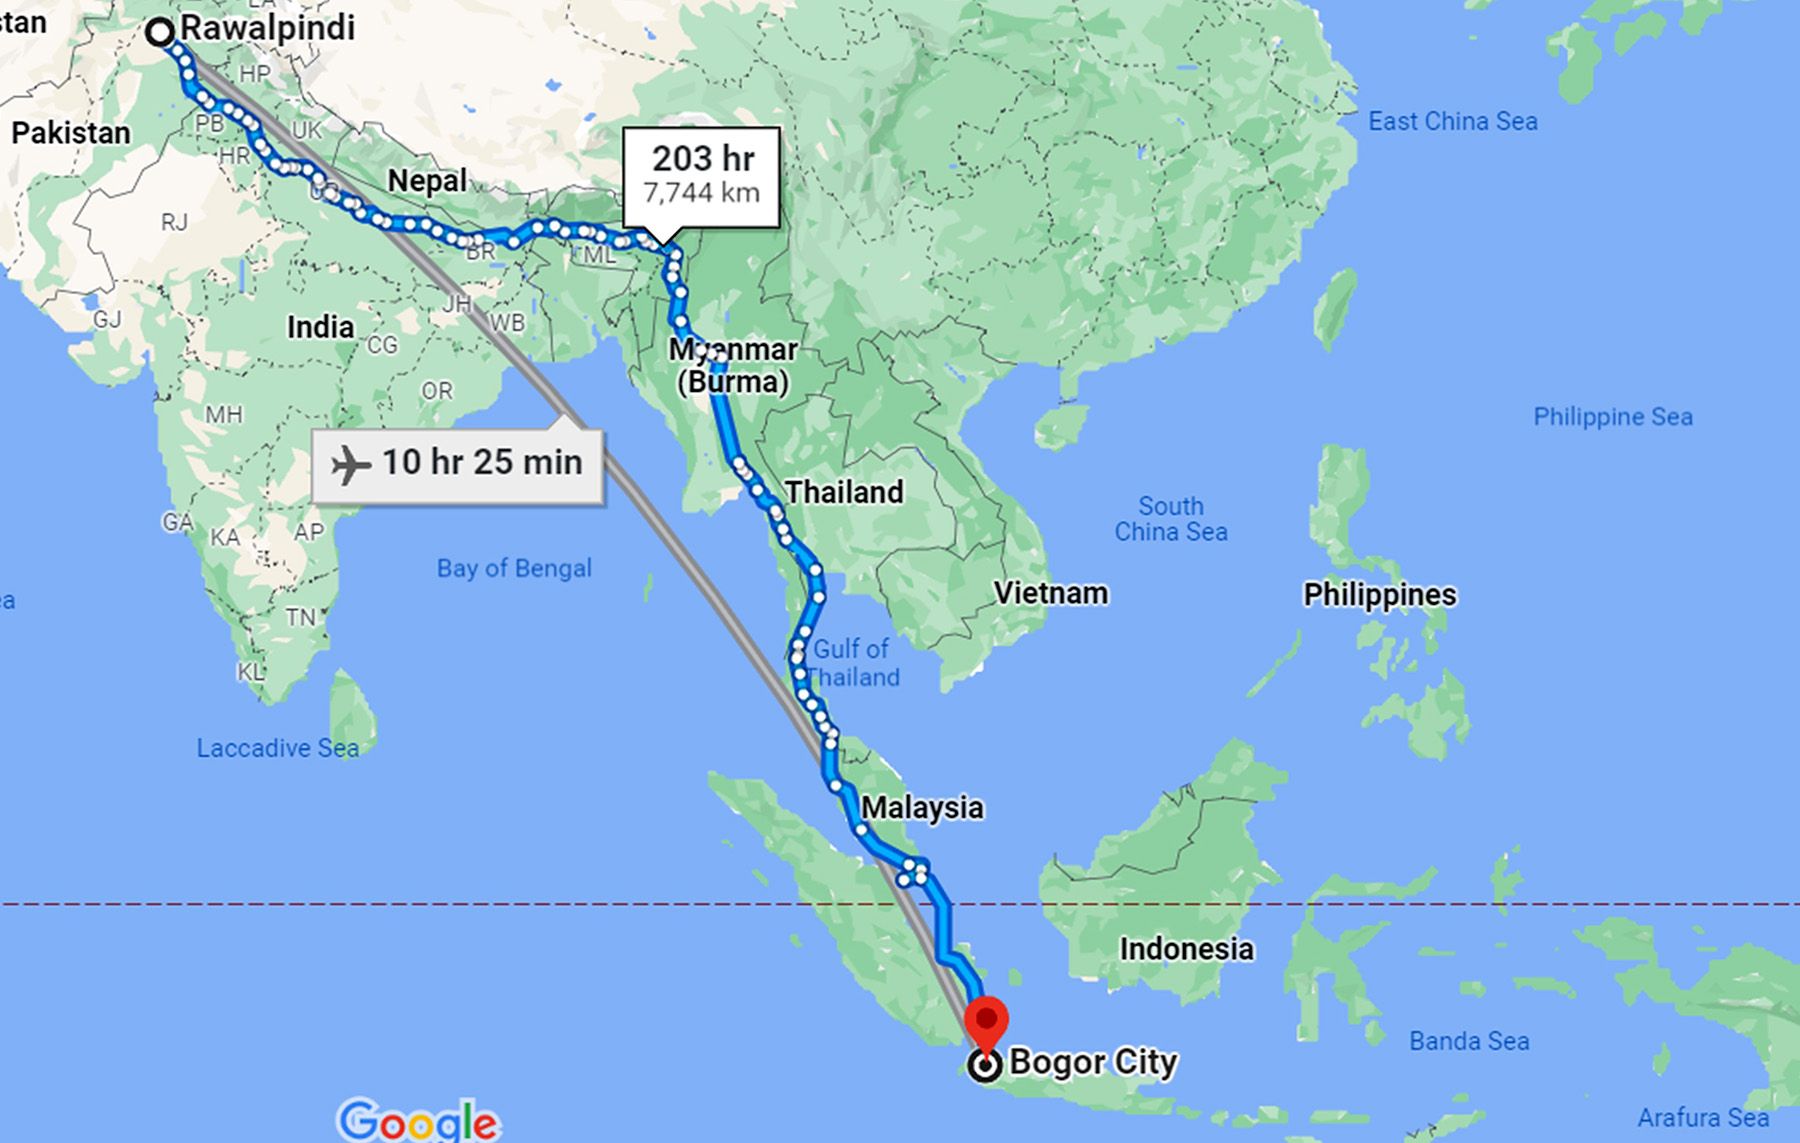 Hijrah Miahan dari Rawalpindi, India, ke Bogor, yang berjarak sekitar 7,744 km